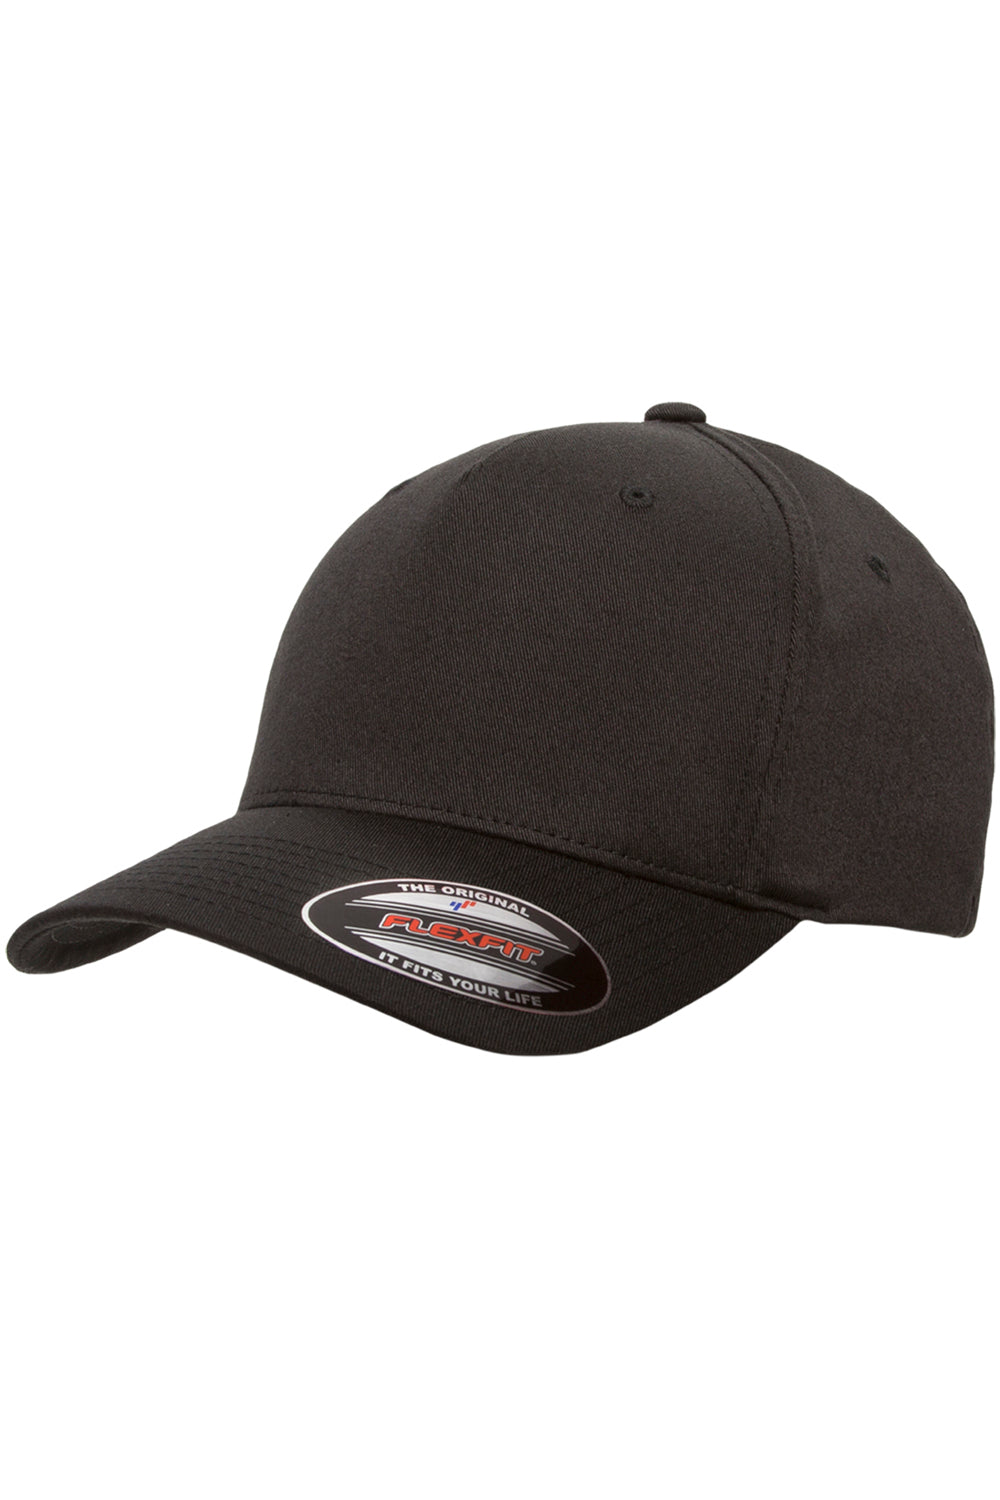 Flexfit 6560 Mens Stretch Fit Hat Black Front